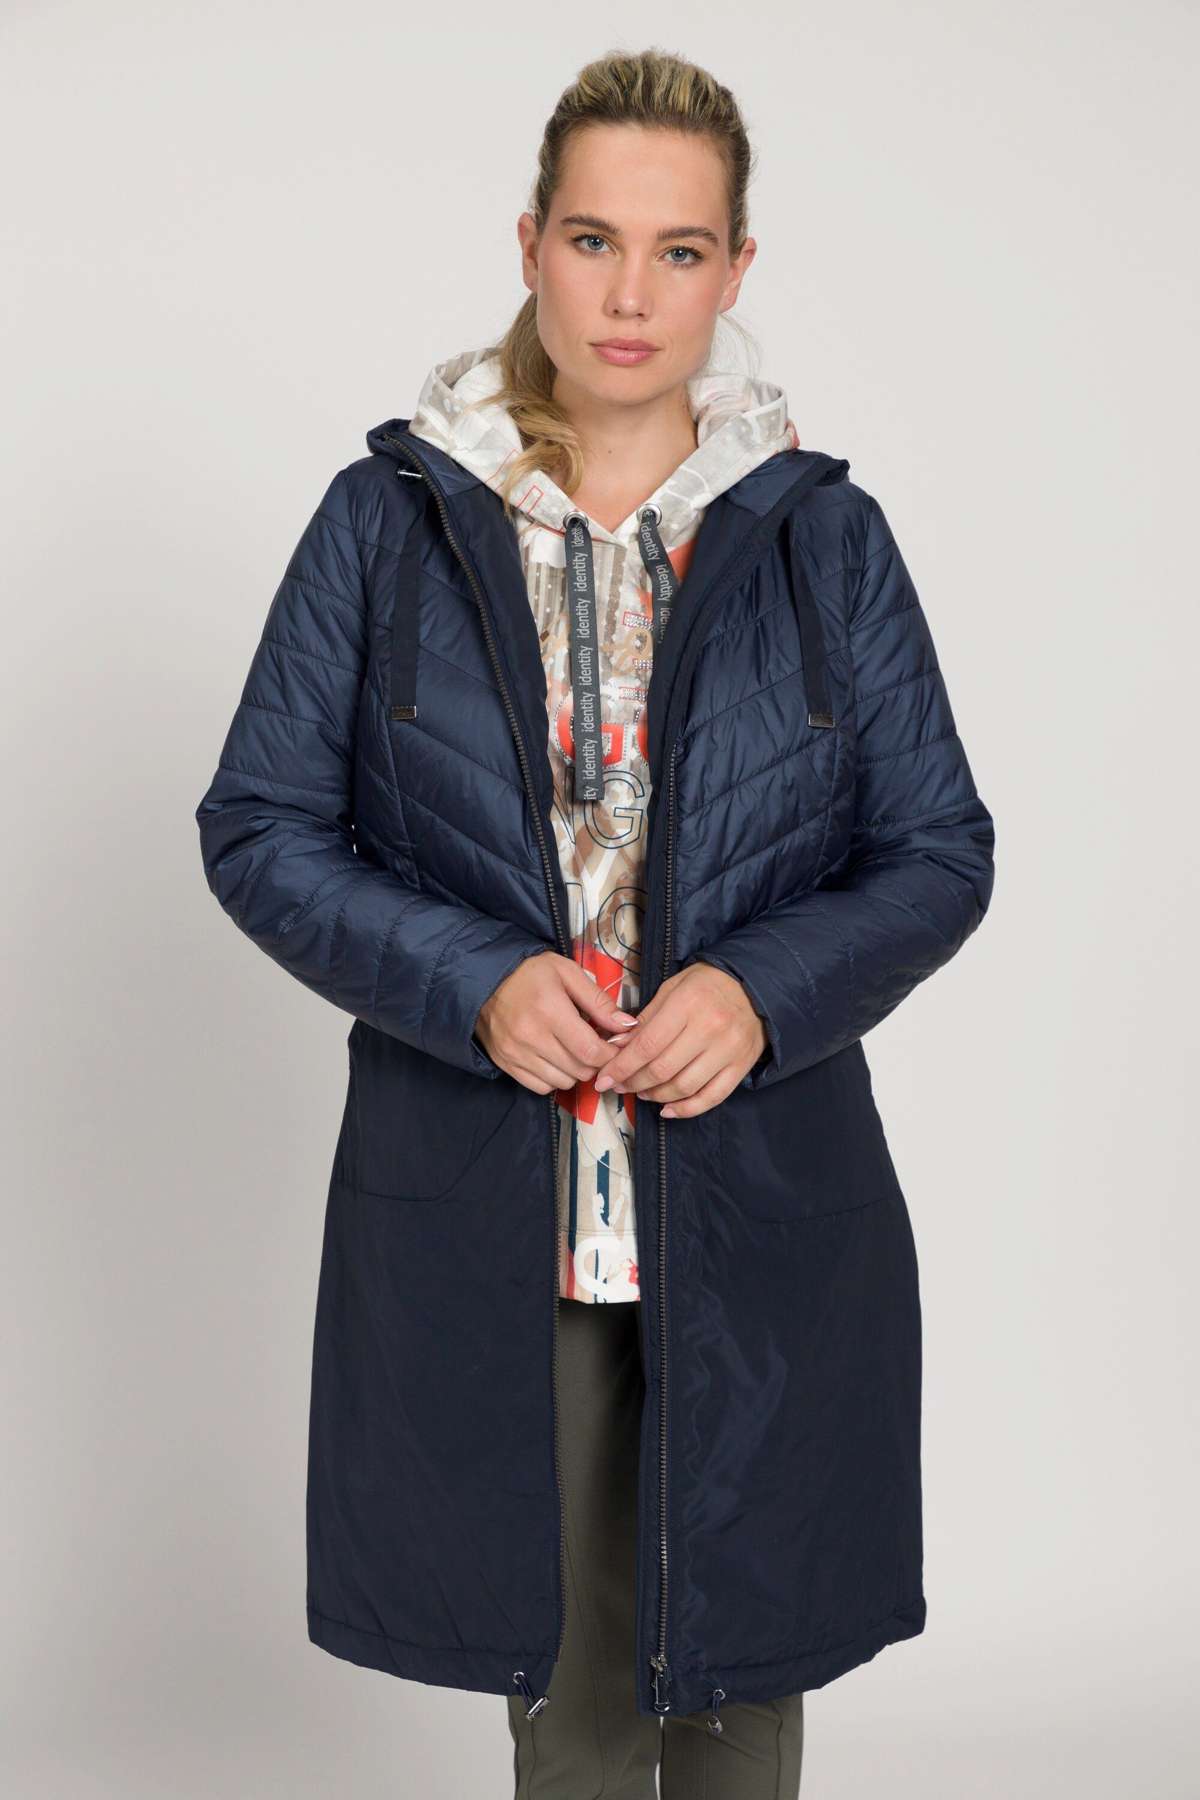 Стеганое пальто стеганое пальто Айдентика длинной формы многослойный капюшон